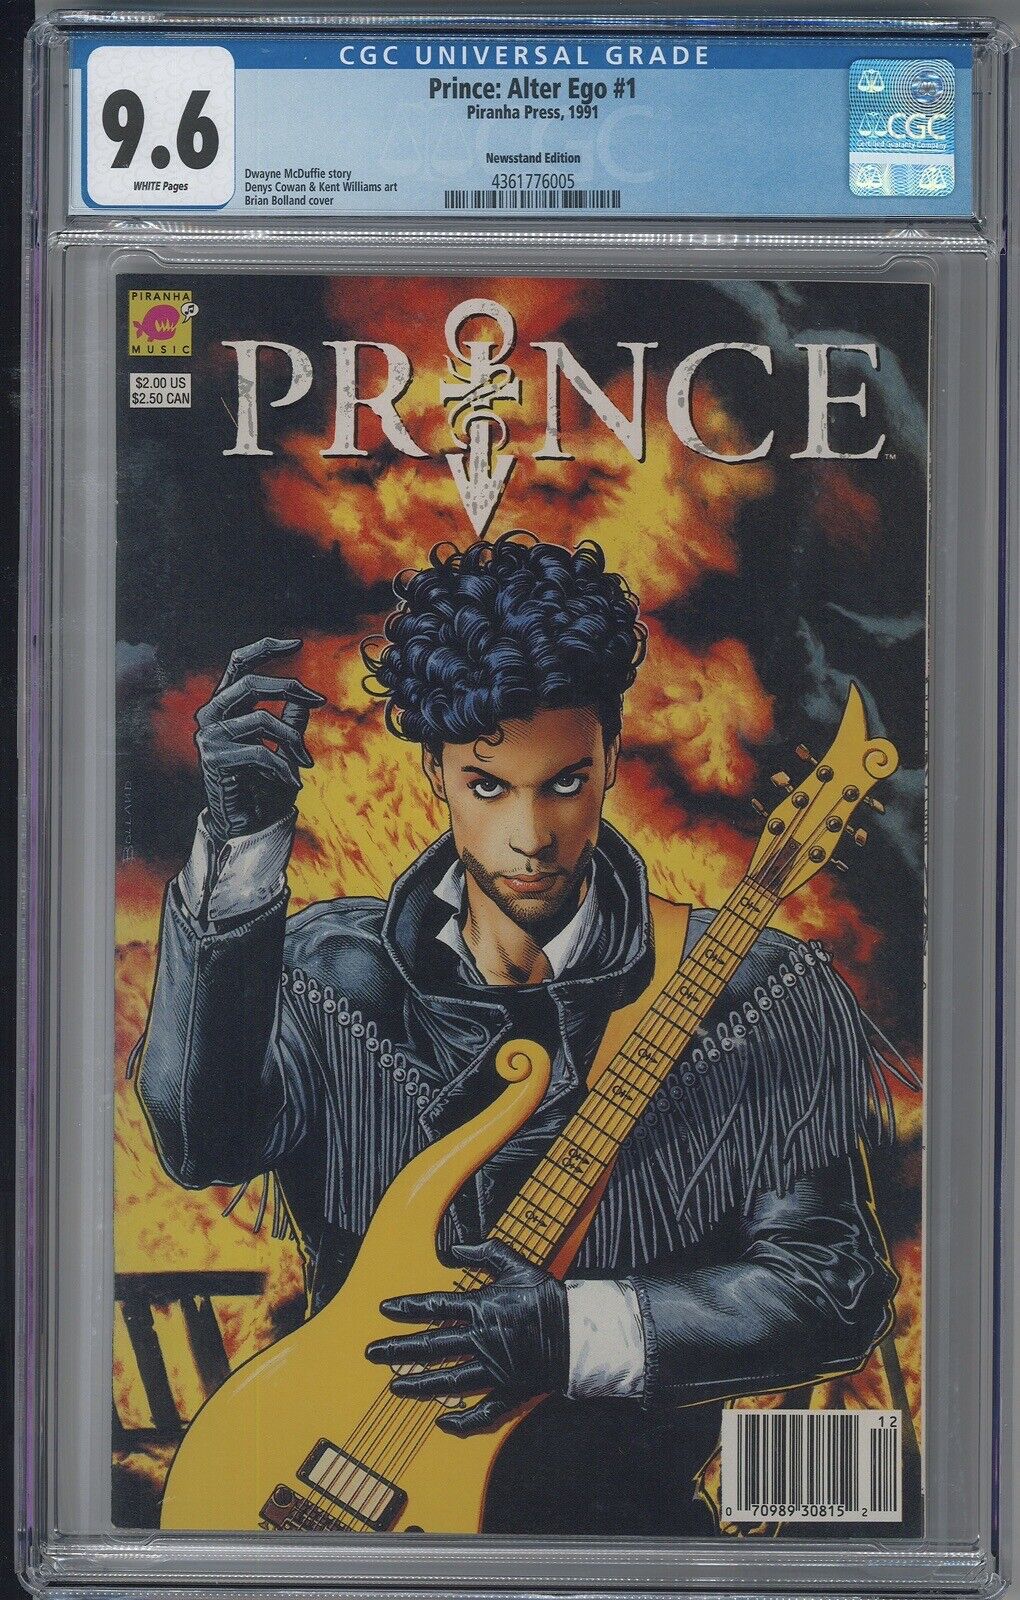 Prince Alter Ego 1 CGC 9.6 NM+ SUPER RARE Newsstand Variant PIRANHA PRESS 1991